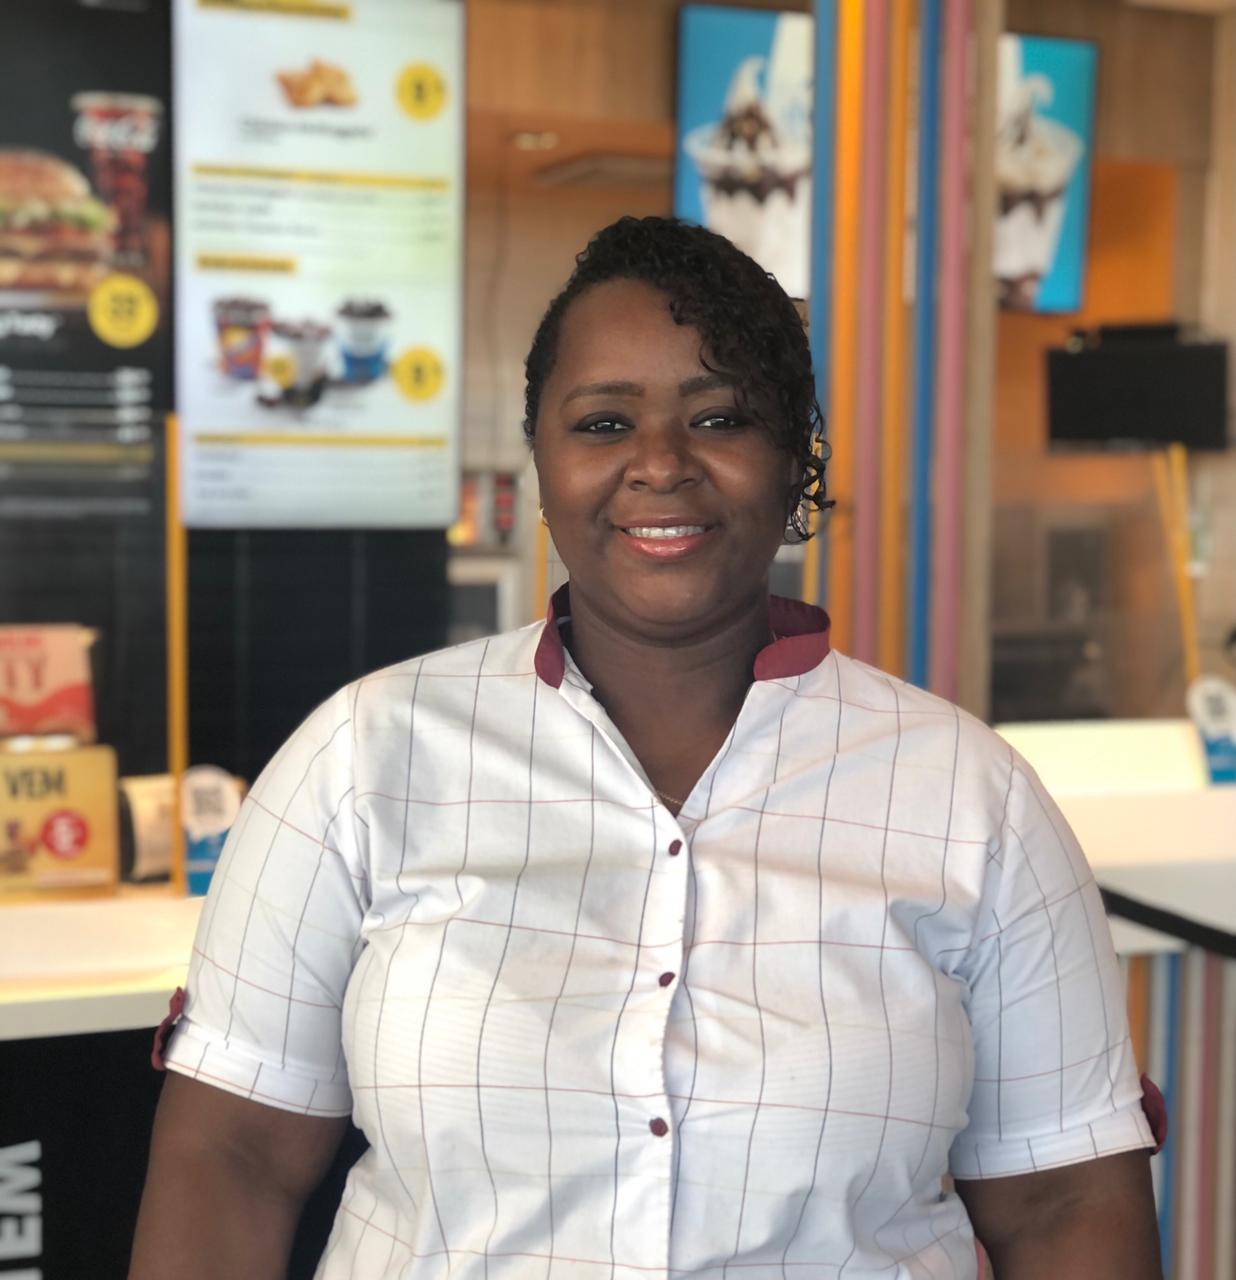 Mulheres negras representam 25% das pessoas promovidas para cargos de liderança no McDonald’s no Brasil